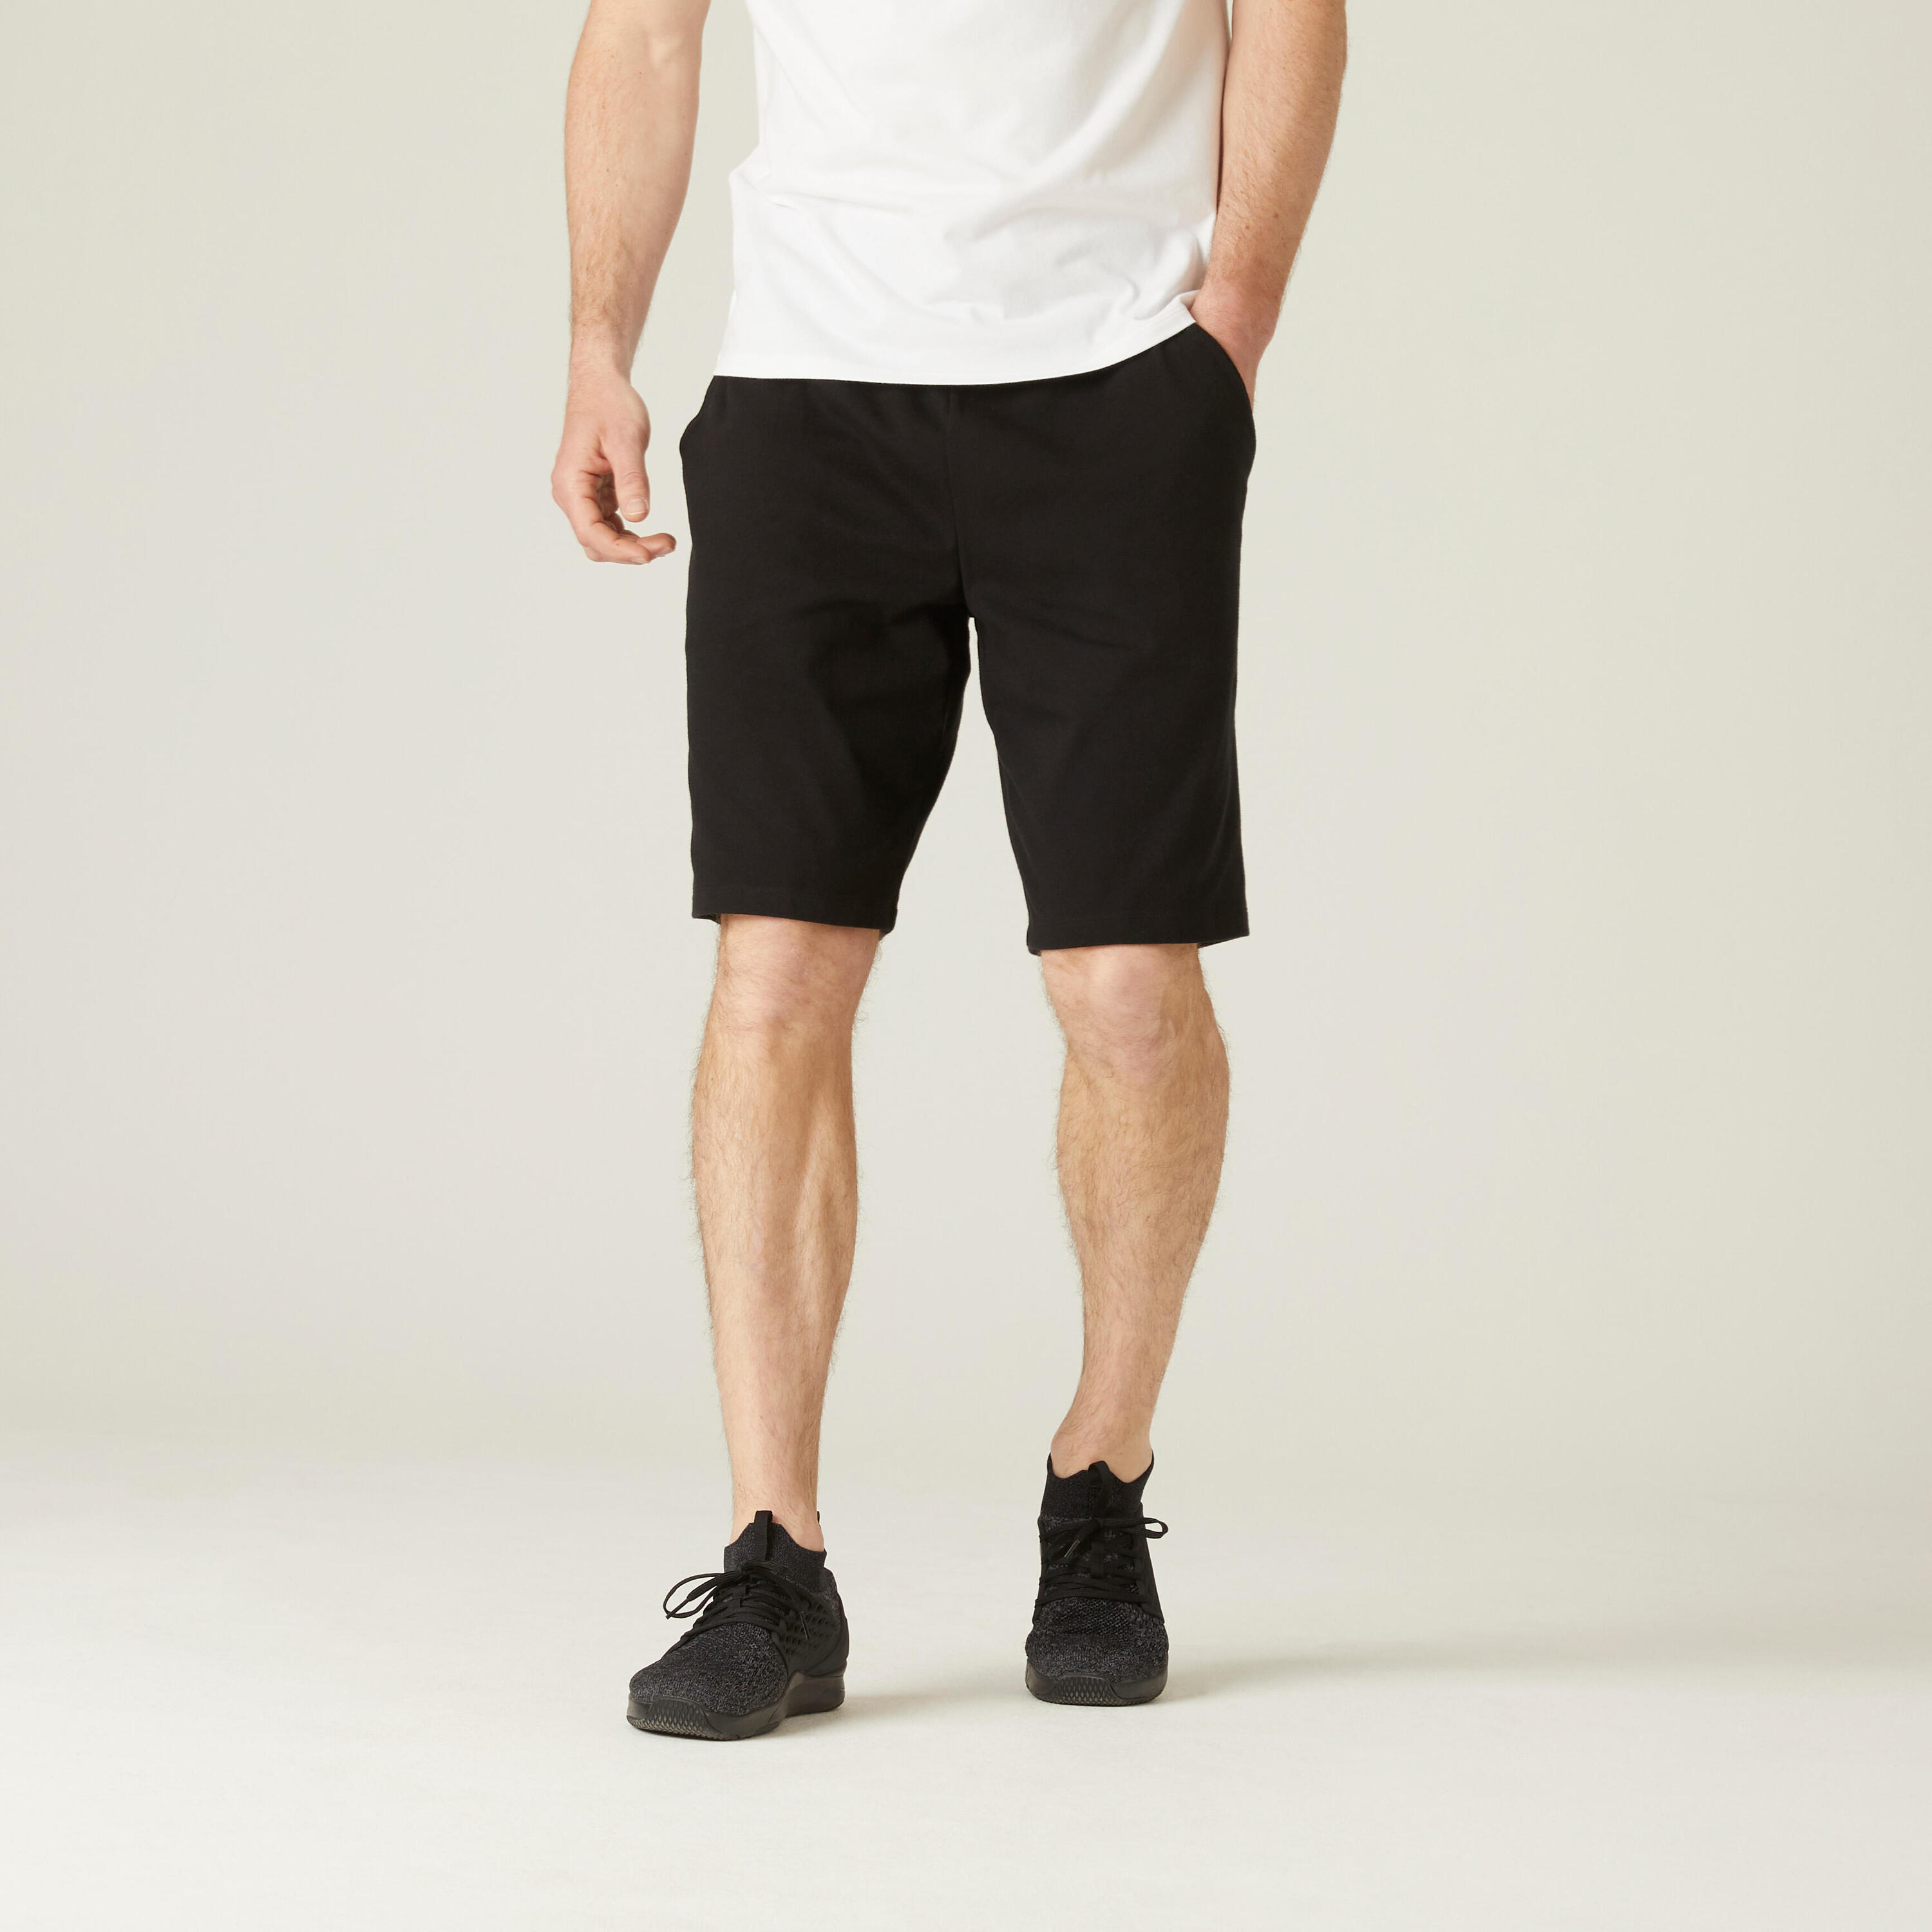 NYAMBA Fitness Long Stretch Cotton Shorts - Black